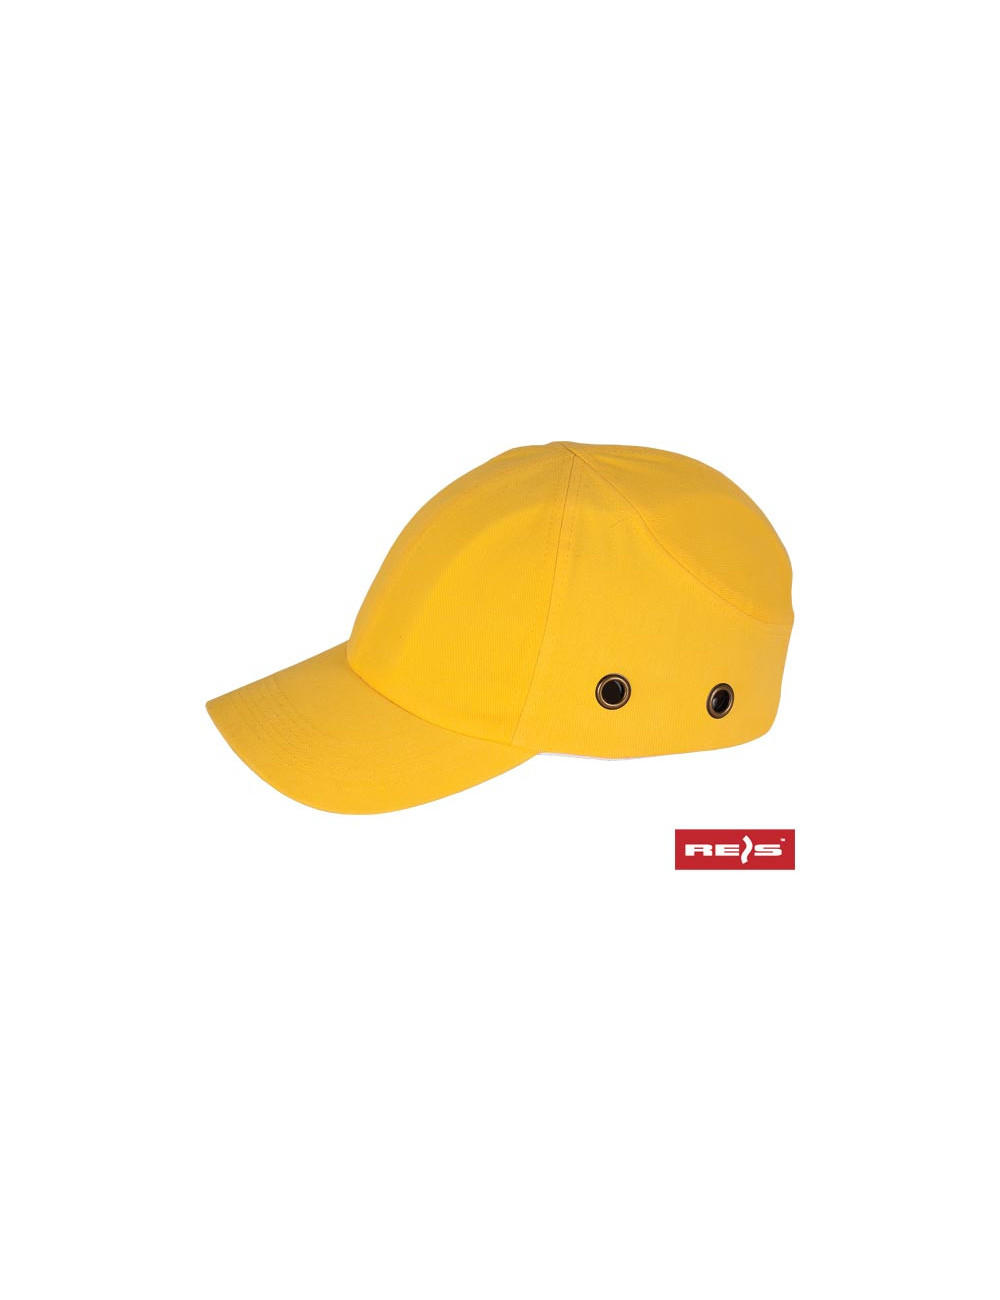 Industrieller leichter Bumpcap-Helm, gelb, Reis